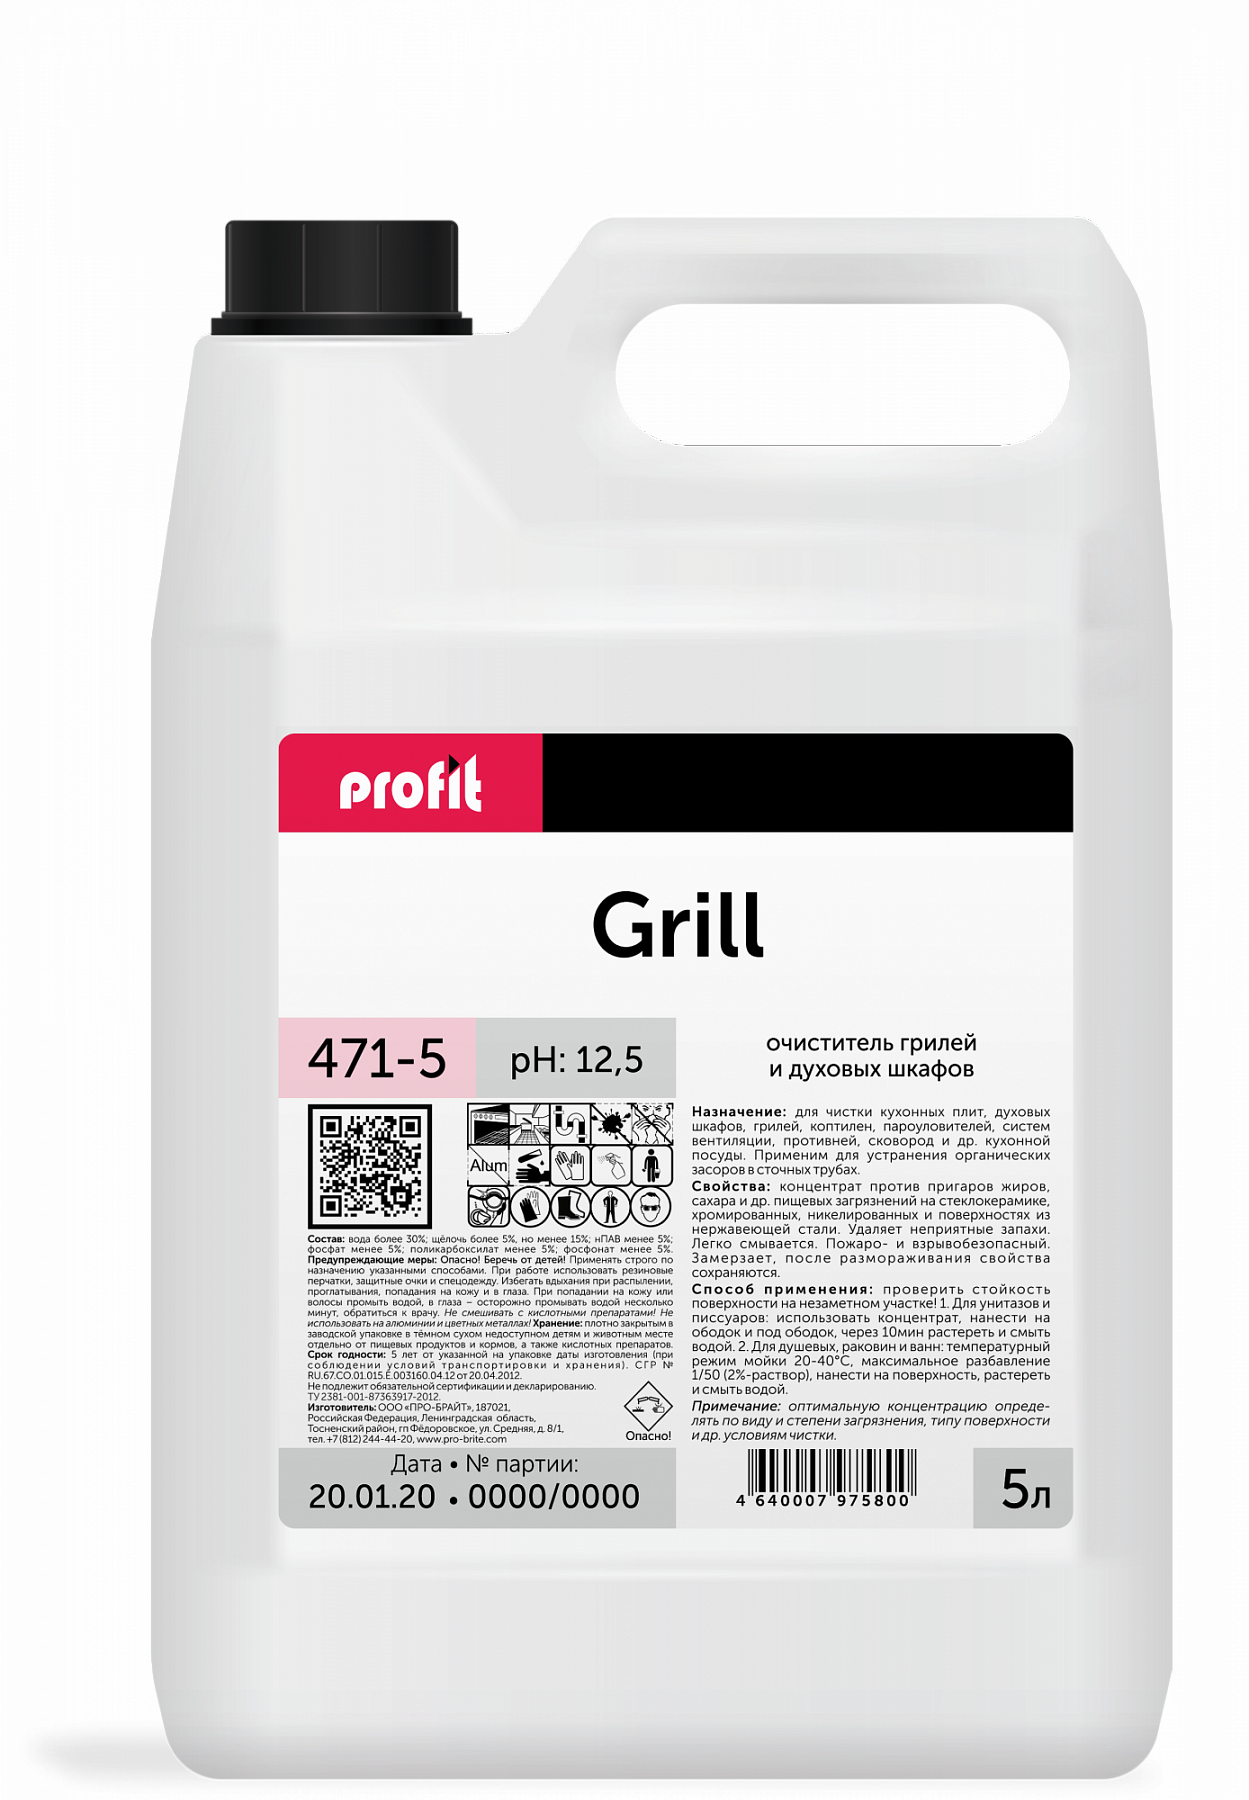 Чистящее средство для плит, гридей, духовок Pro-Brite PROFIT GRILL, 5л средство для очистки грилей и духовых шкафов grill 5 л